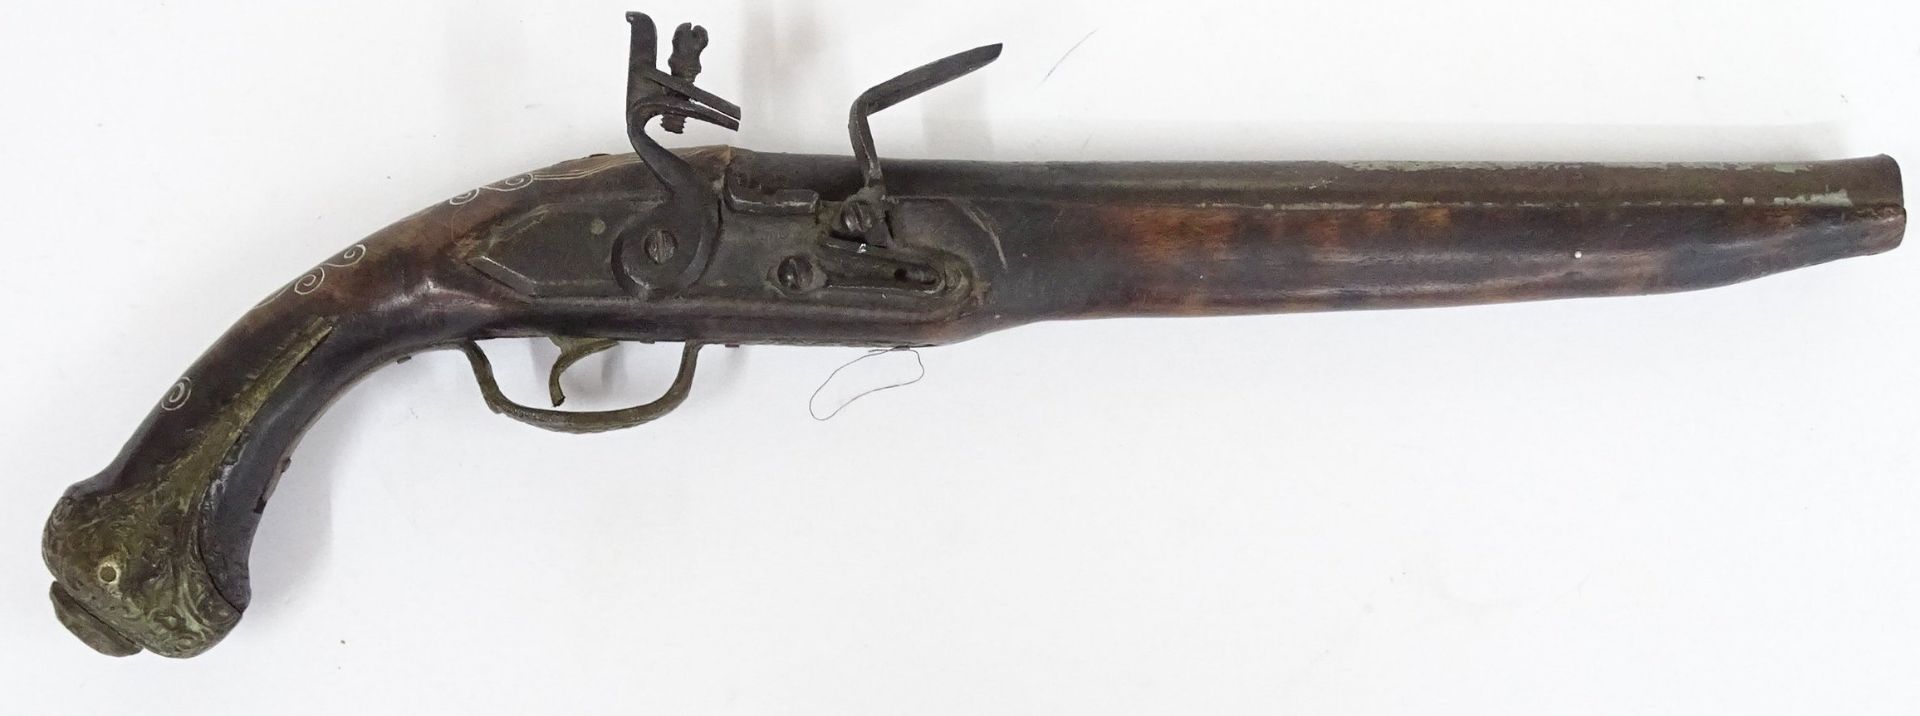 Steinschlloss-Pistole, wohl Deko. L-44 cm - Bild 2 aus 8